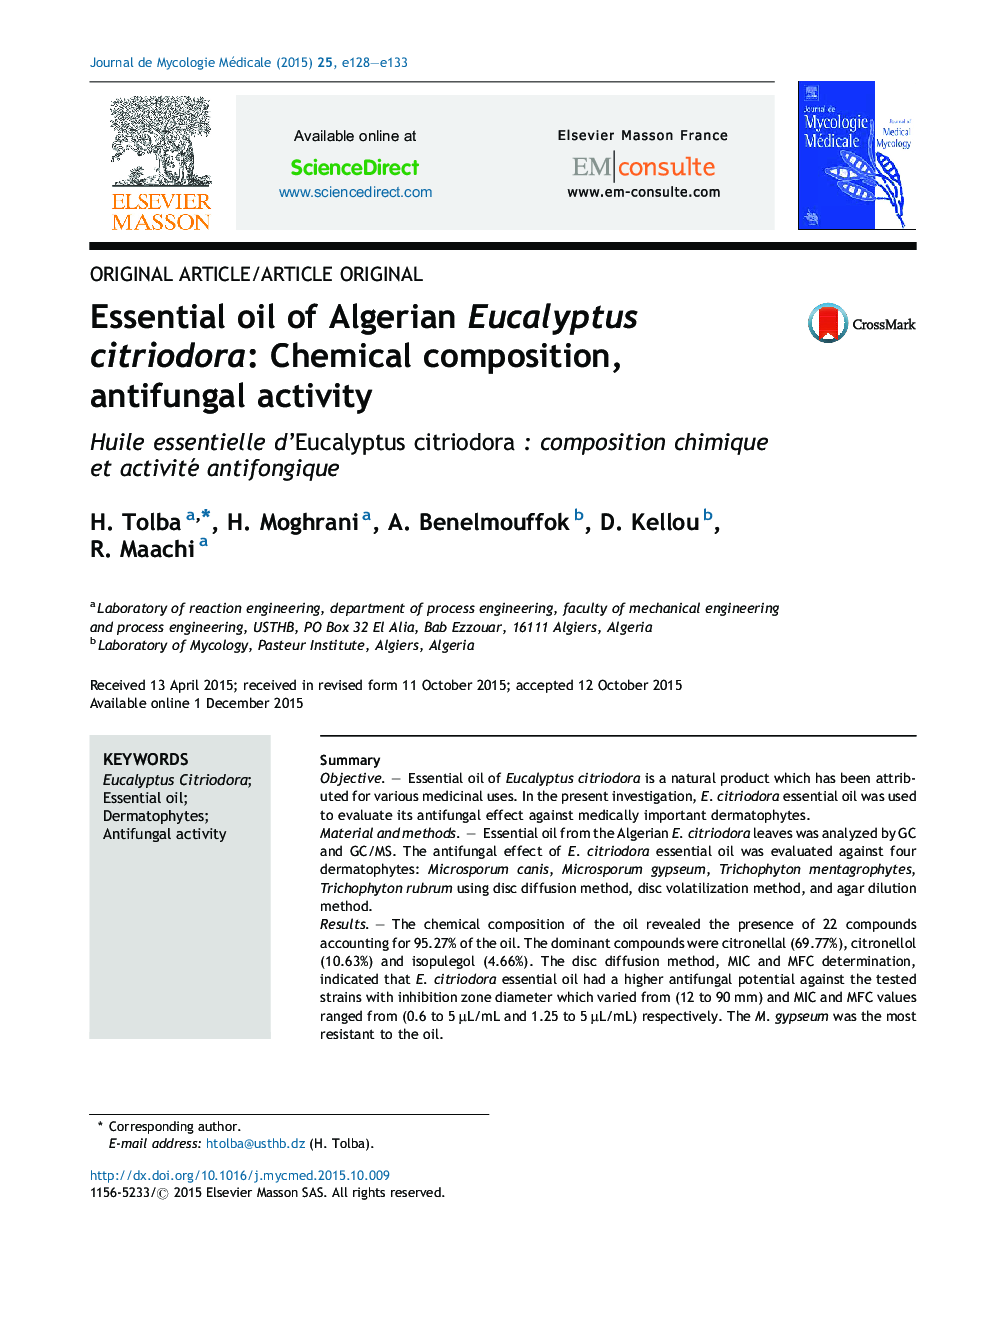 Essential oil of Algerian Eucalyptus citriodora: Chemical composition, antifungal activity